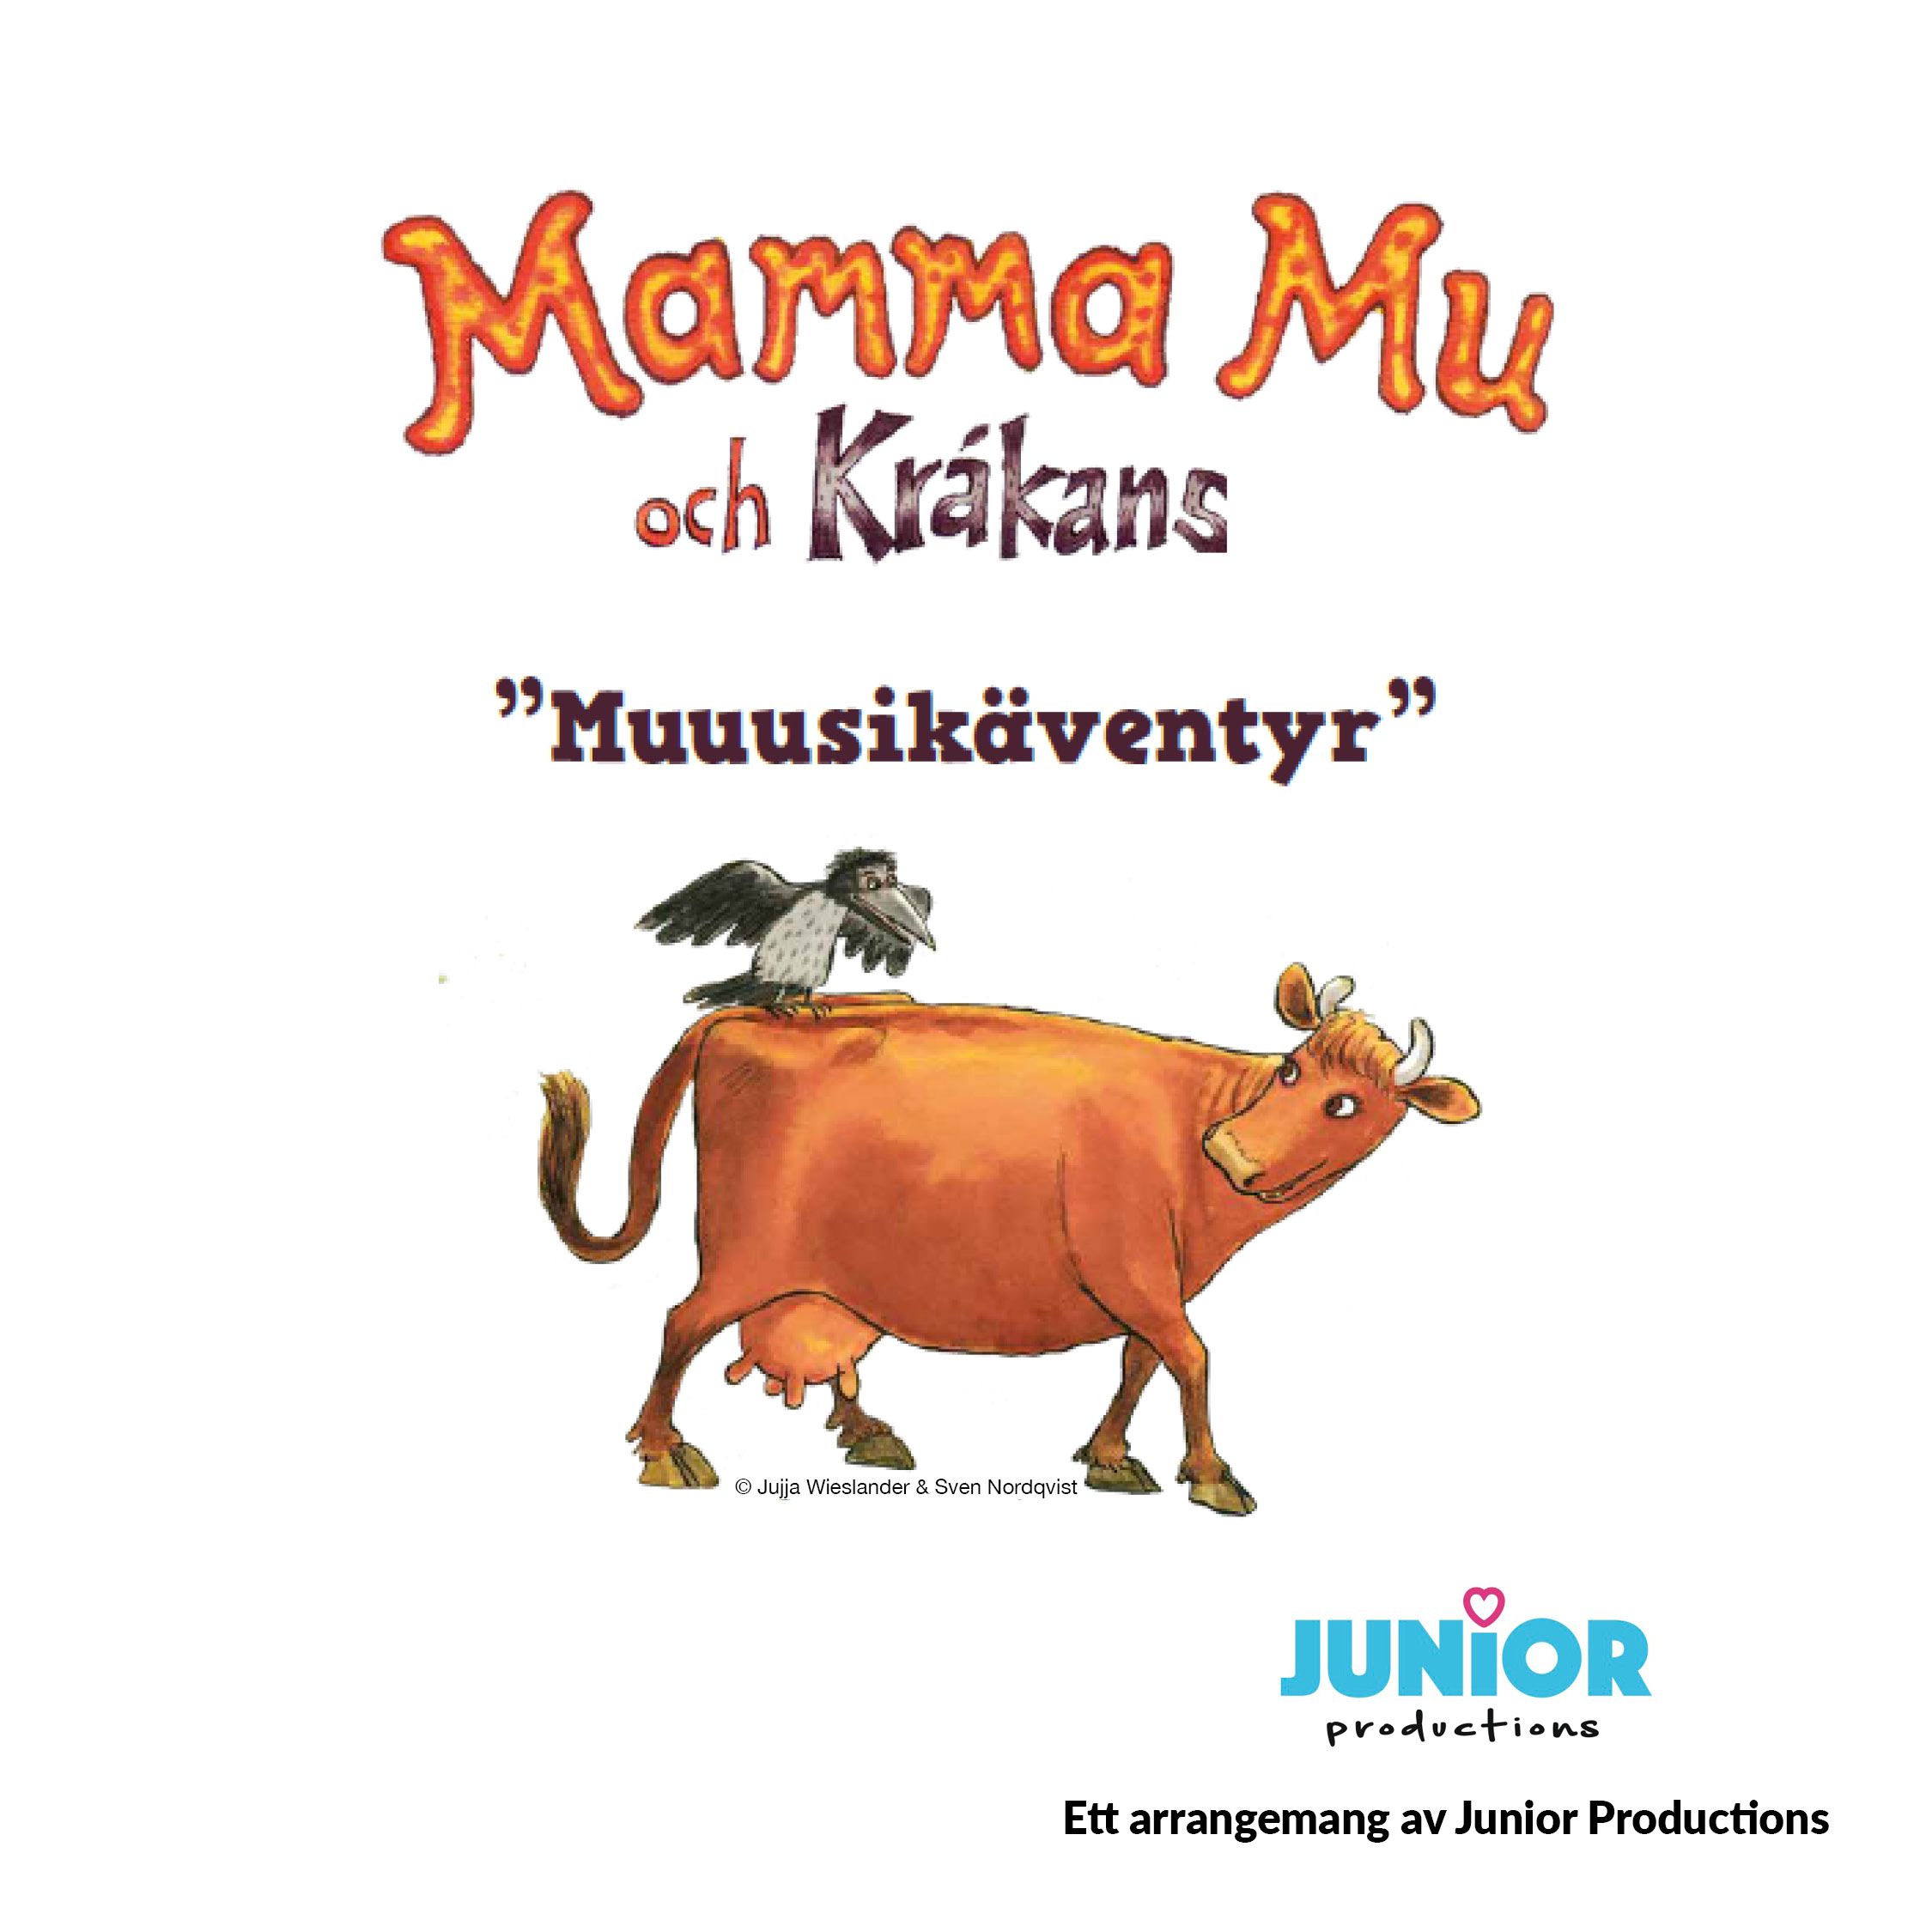 Mamma Mu & Kråkans Muuusikäventyr -15 oktober